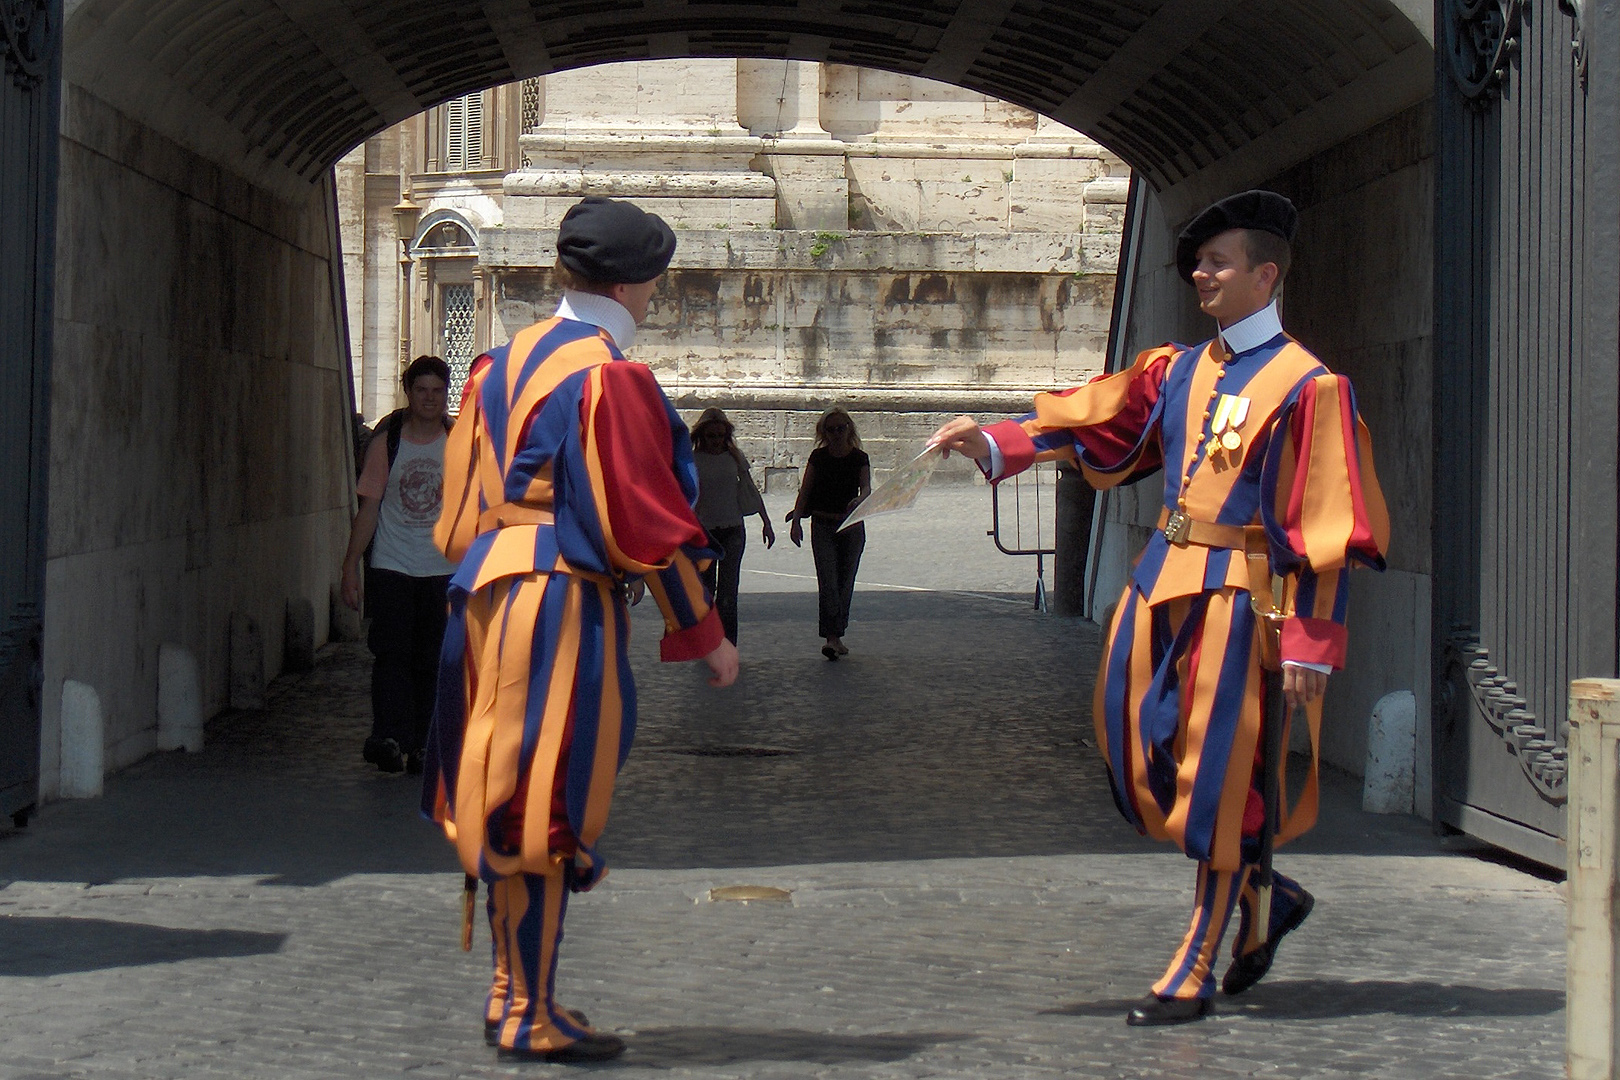 Zwitserse gardisten in Vaticaanstad, Rome, Swiss guards in the Vatican, Rome.